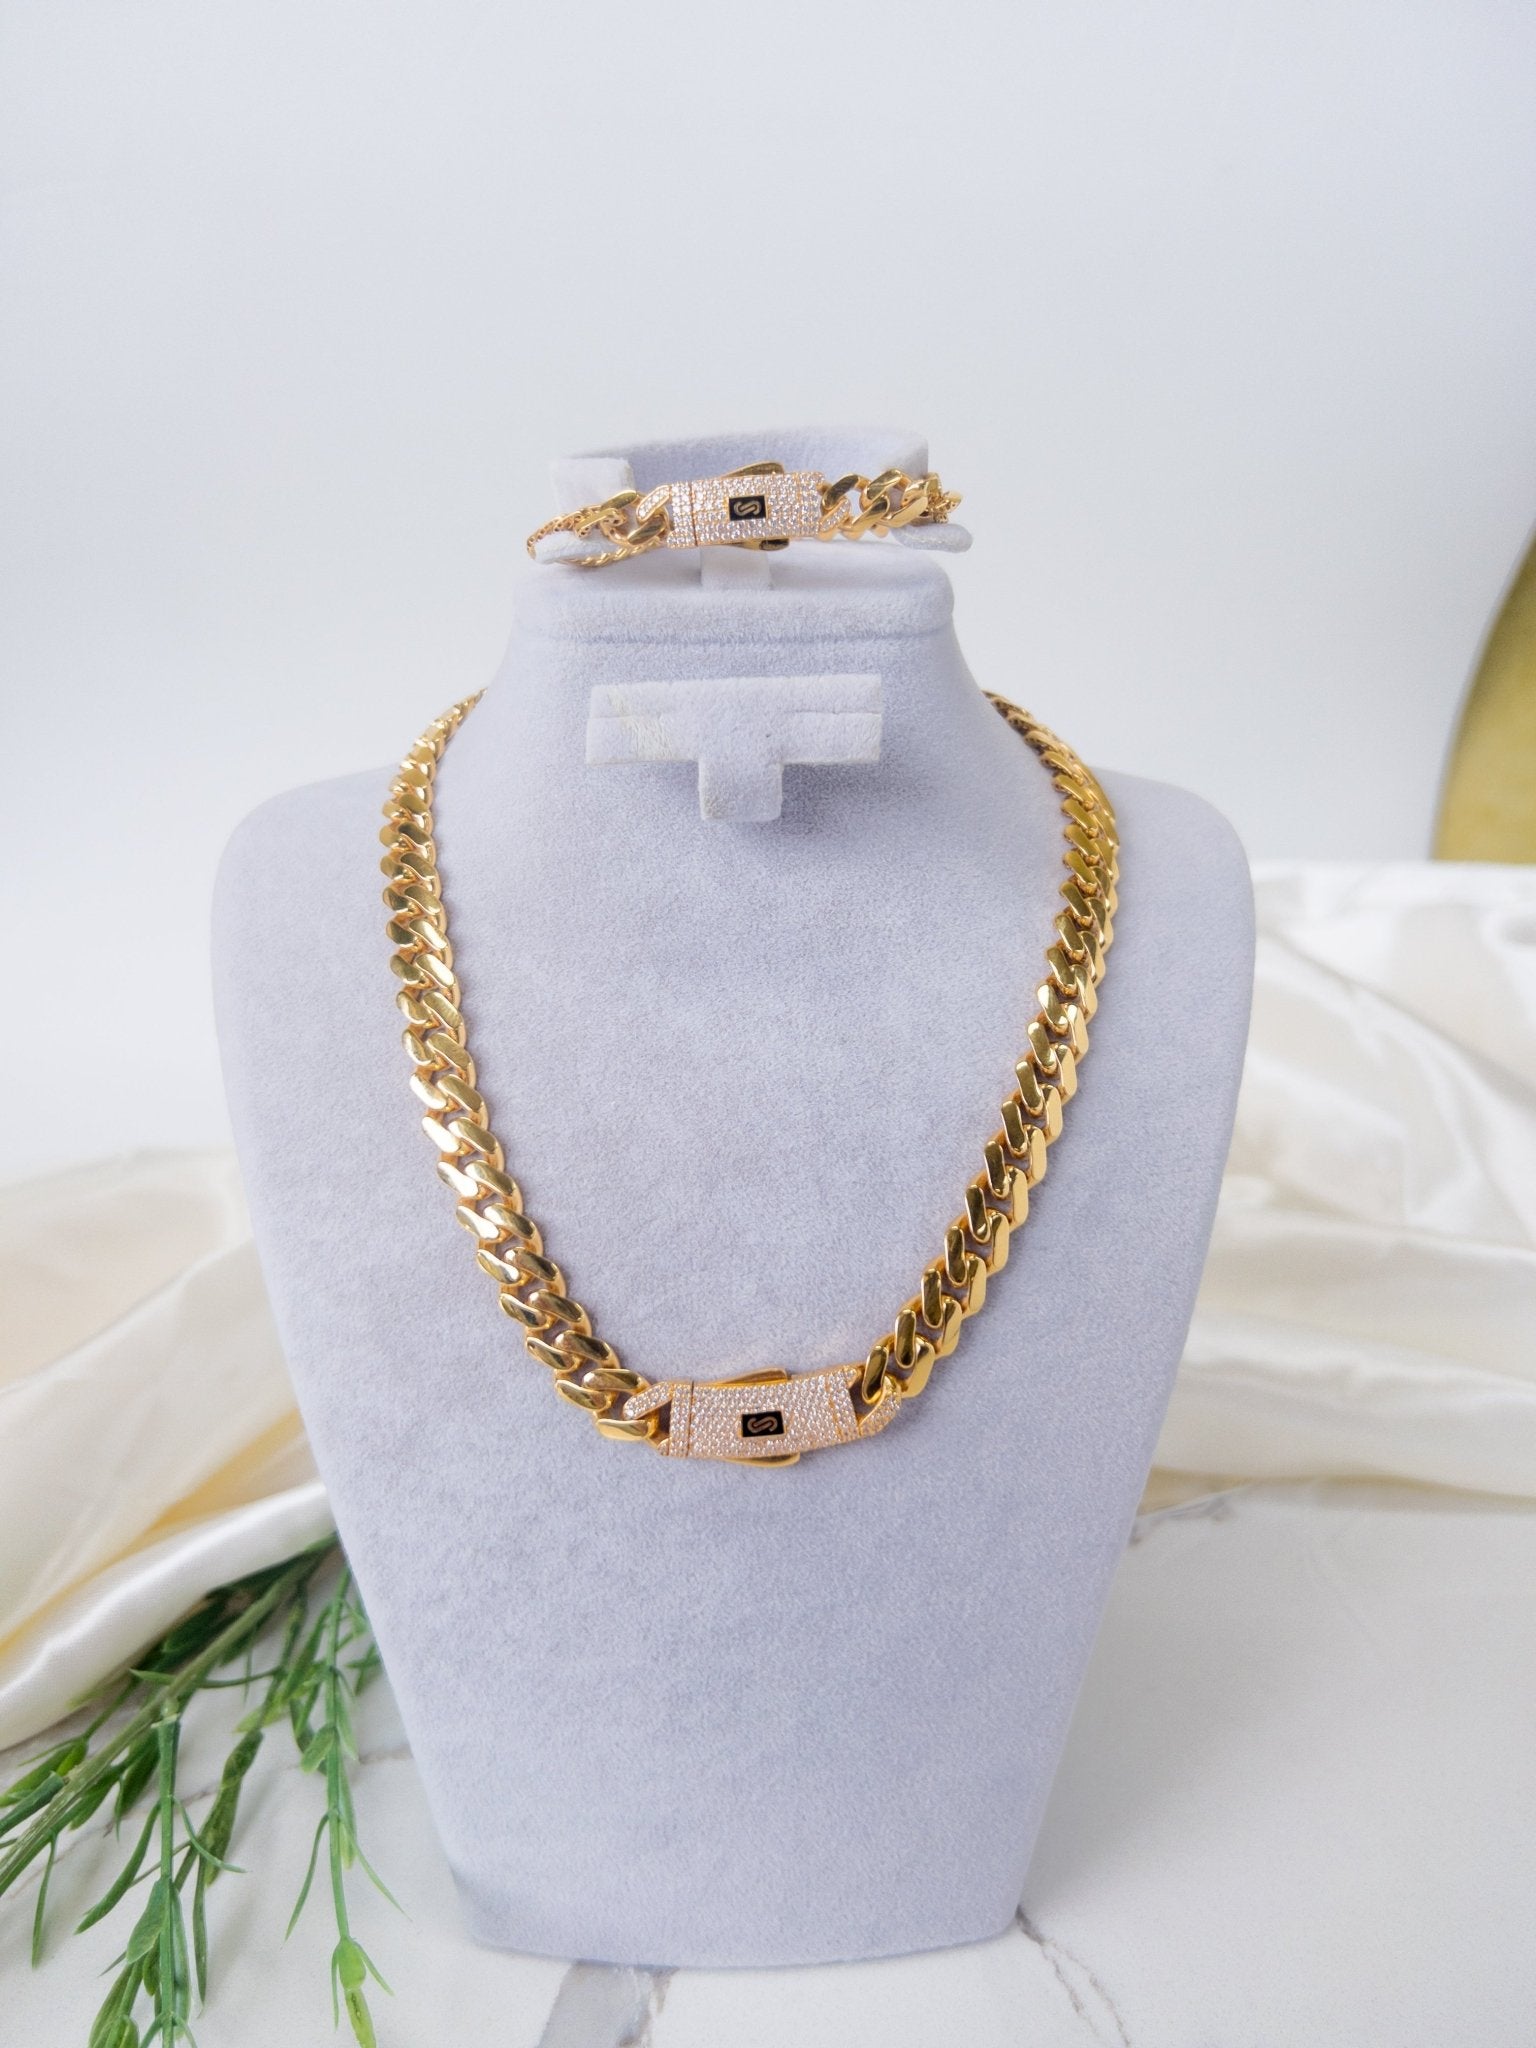 21k Gold Monaco chain classic half set - Cleopatra Jewelers